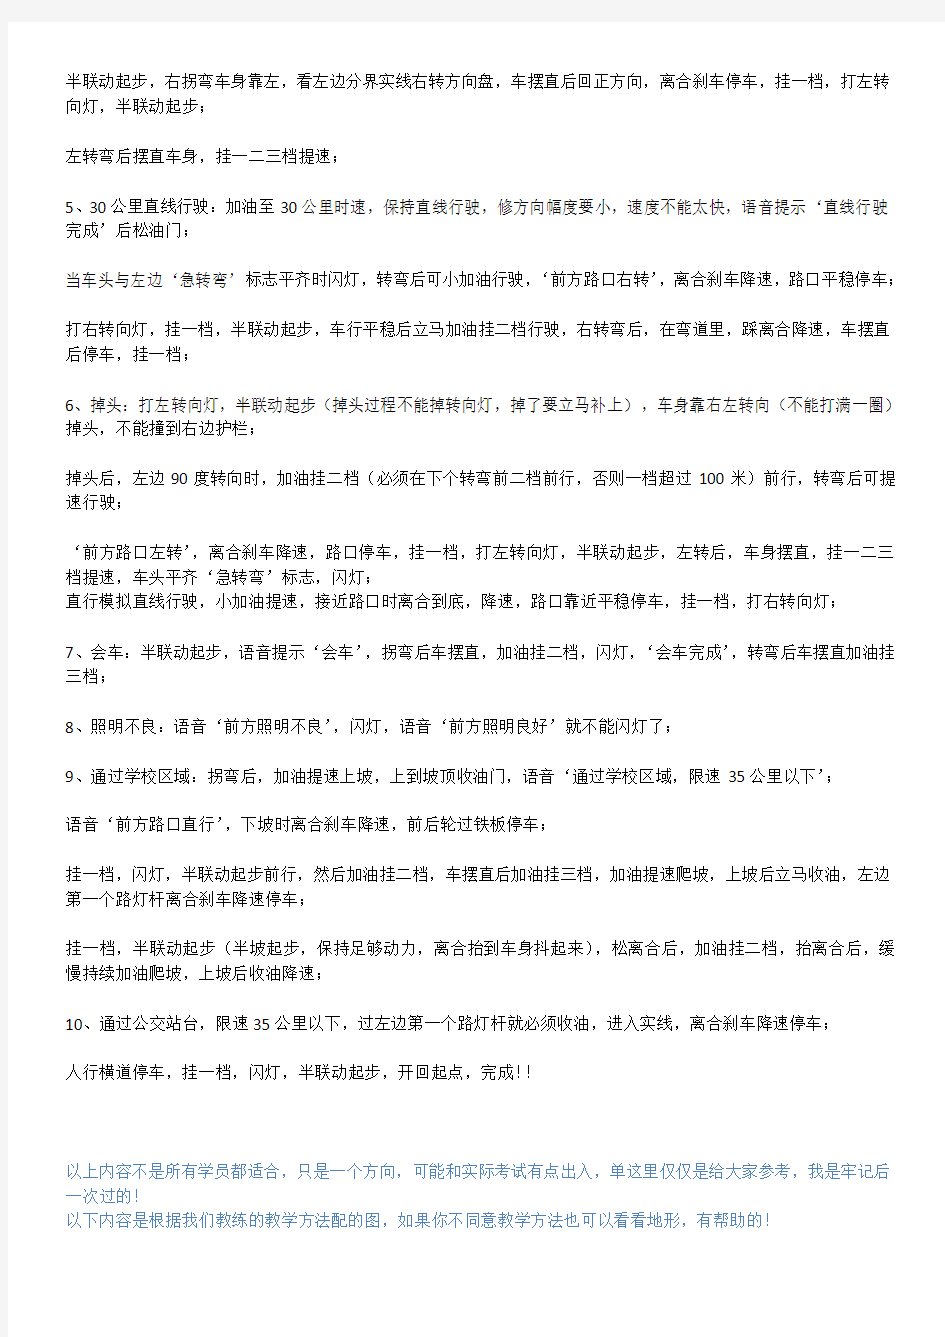 深圳东森考场科目三练习记录—2014年4月17日考试